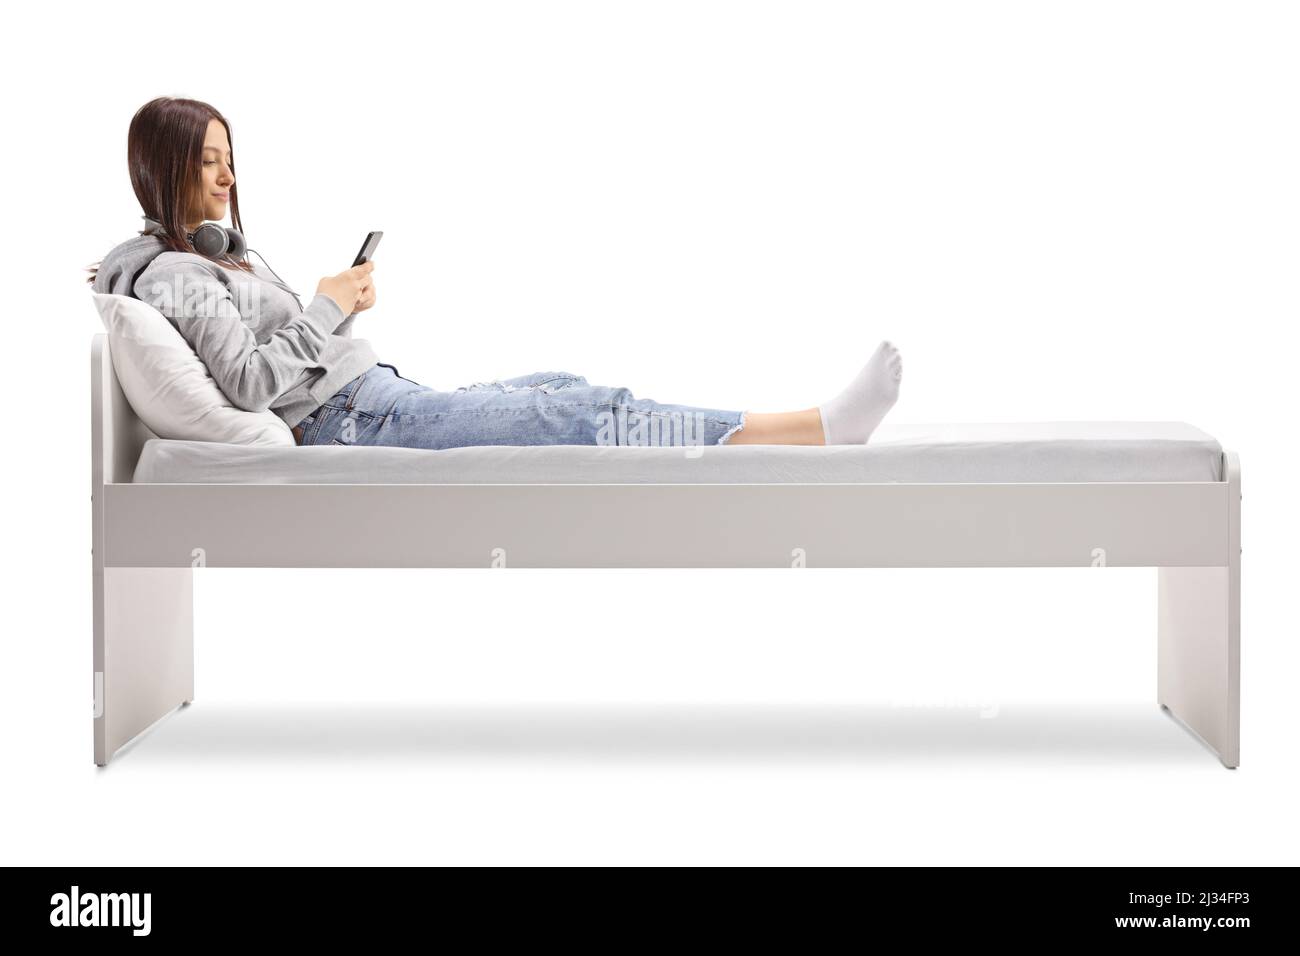 Adolescente femminile sdraiato su un letto e utilizzando uno smartphone isolato su sfondo bianco Foto Stock